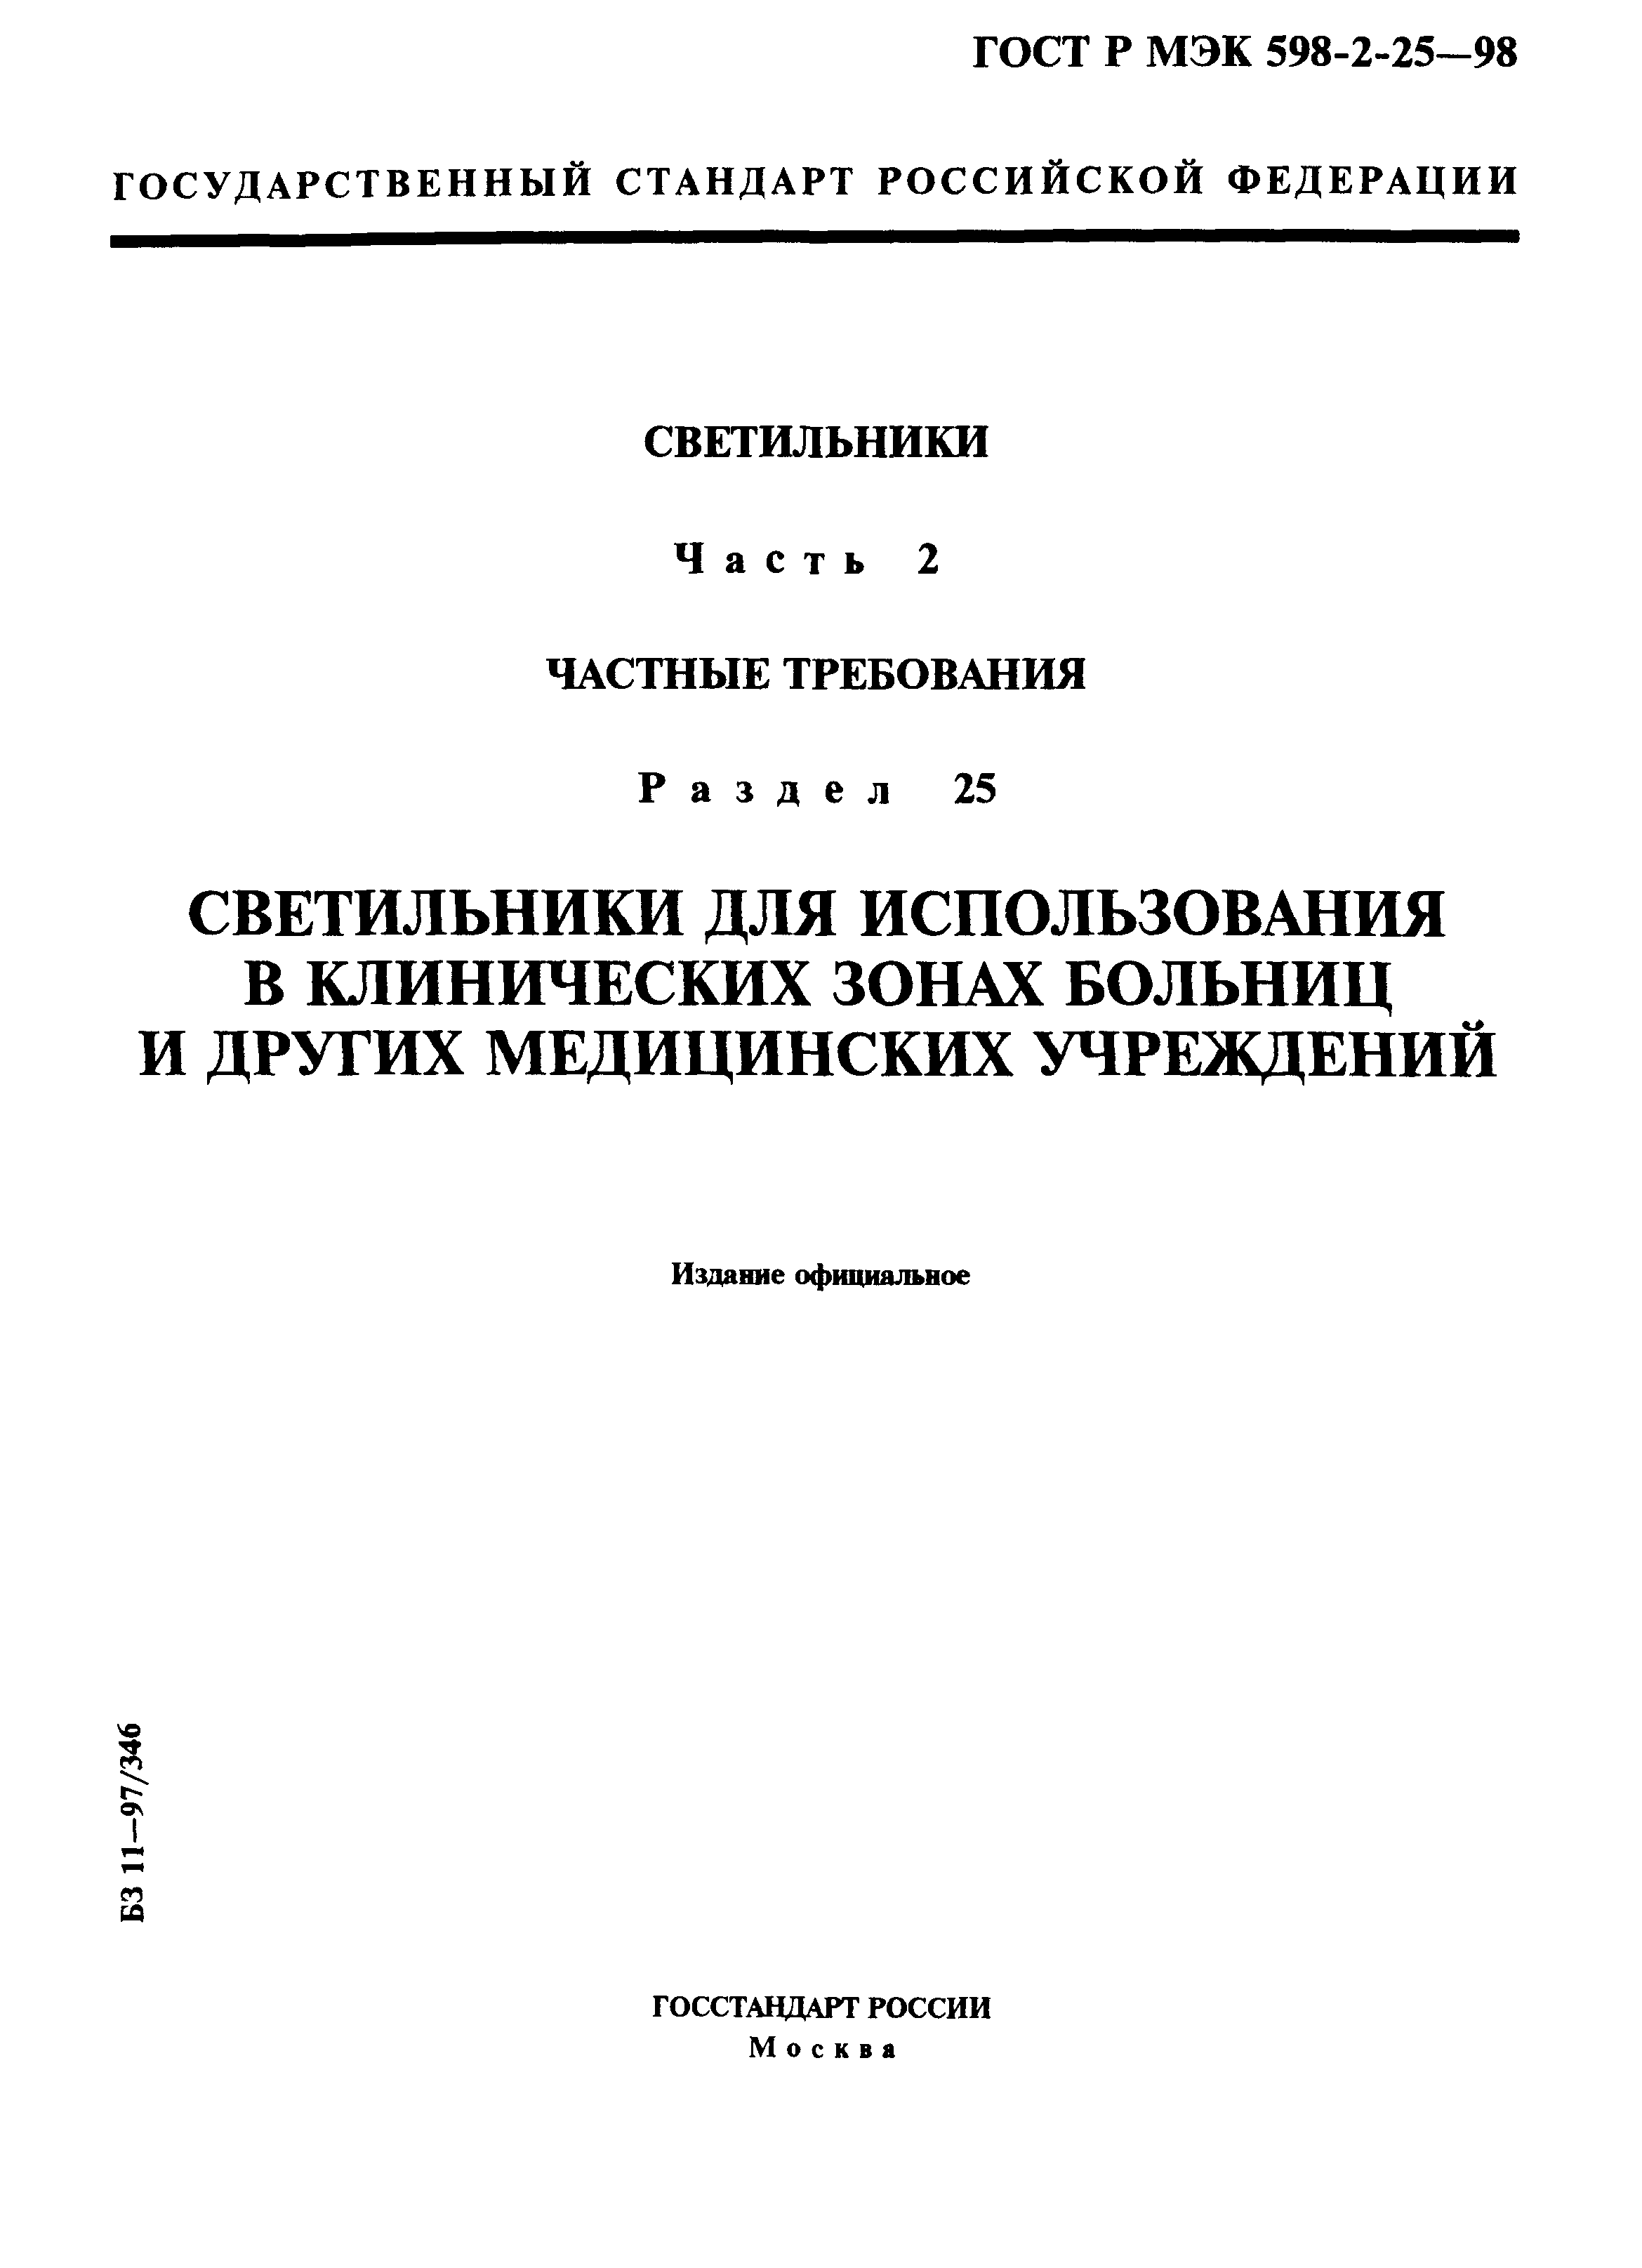 ГОСТ Р МЭК 598-2-25-98